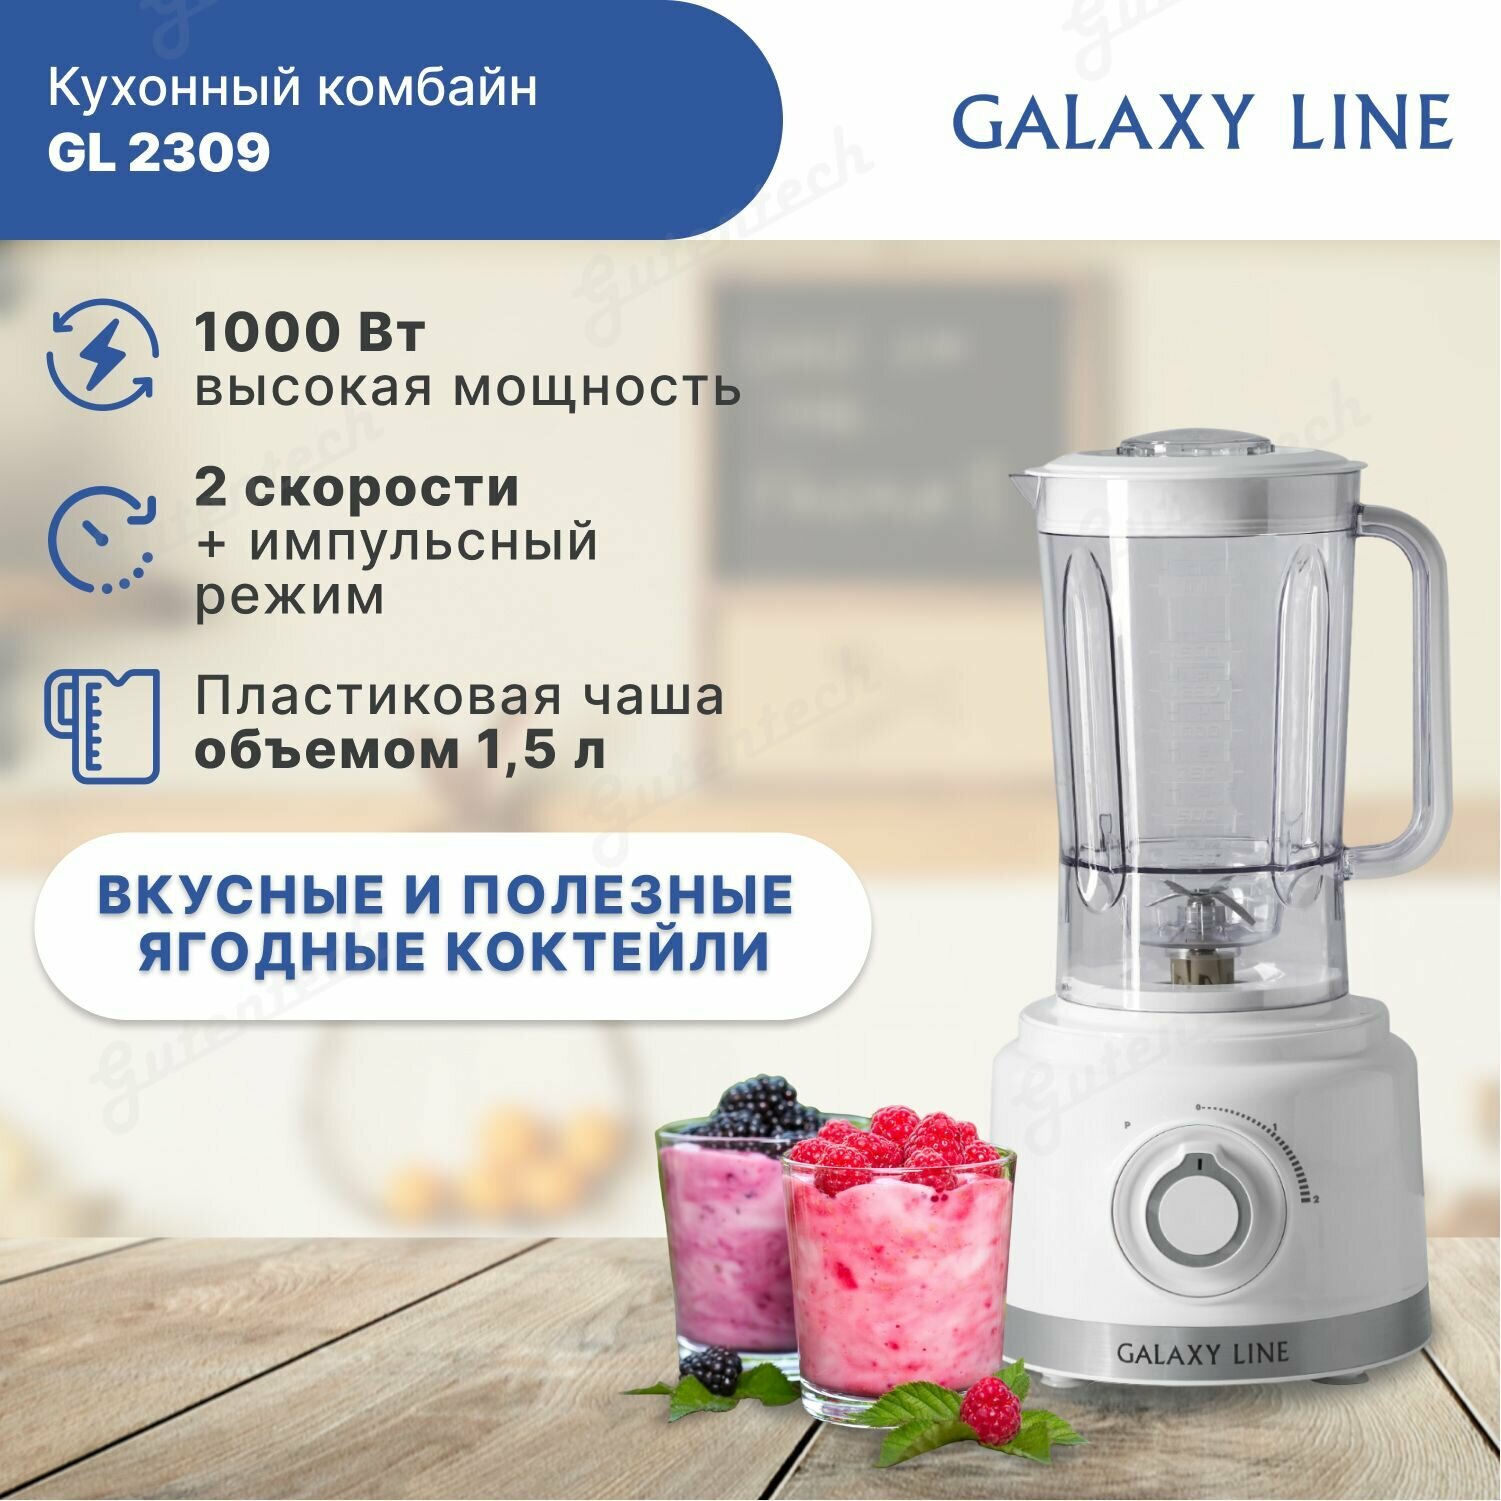 Кухонный комбайн GALAXY LINE GL 2309